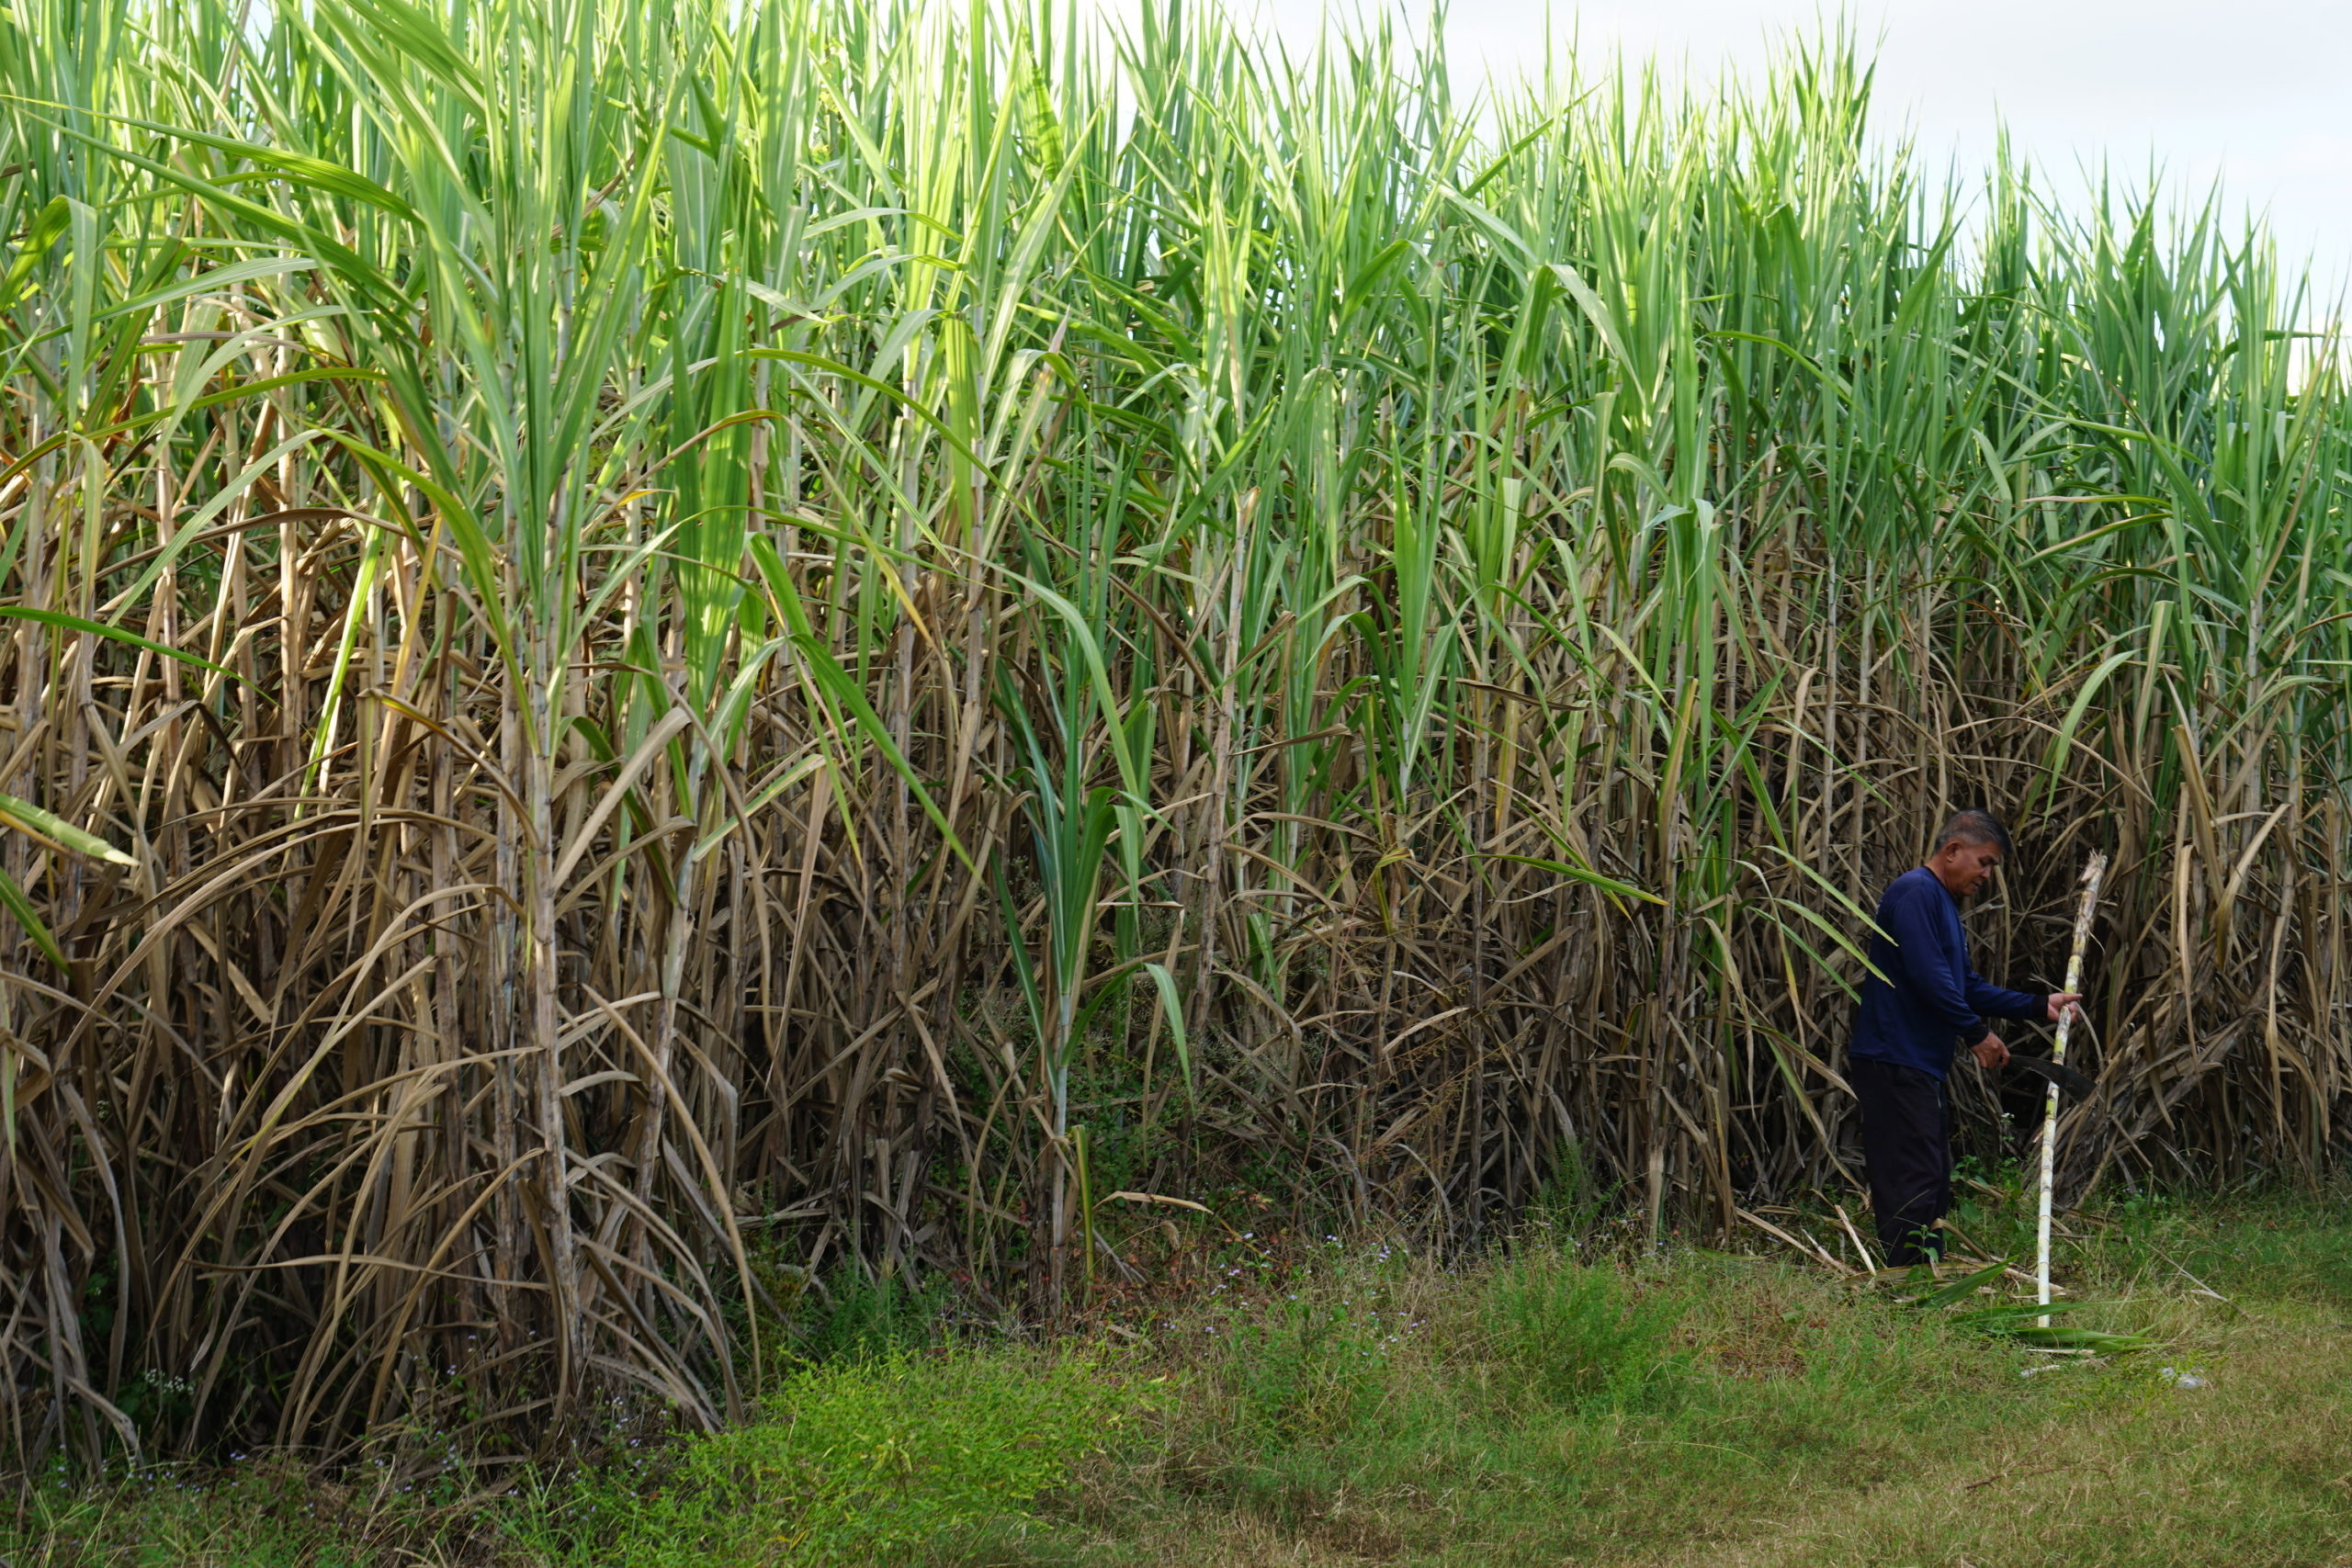 sugarcane worker